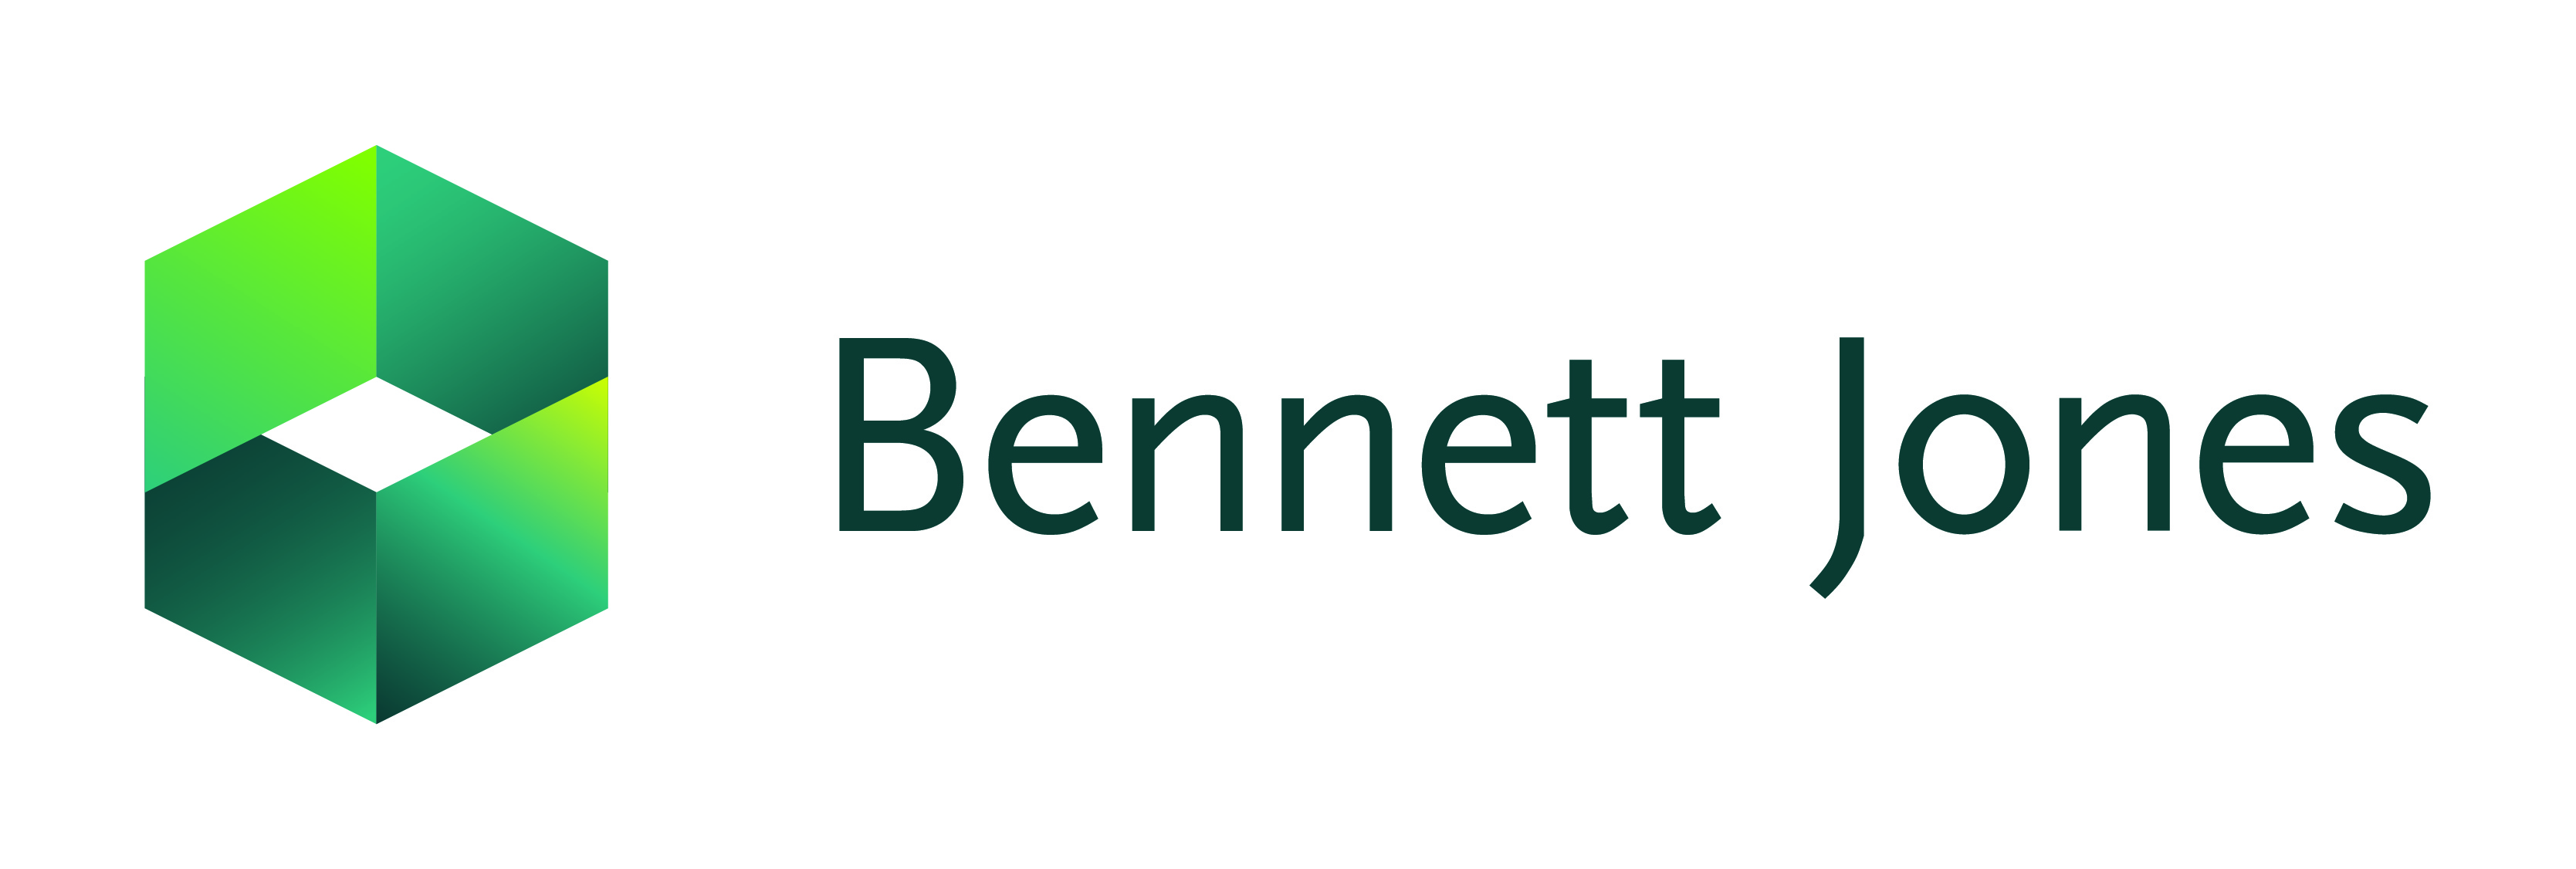 Bennett Jones Logo